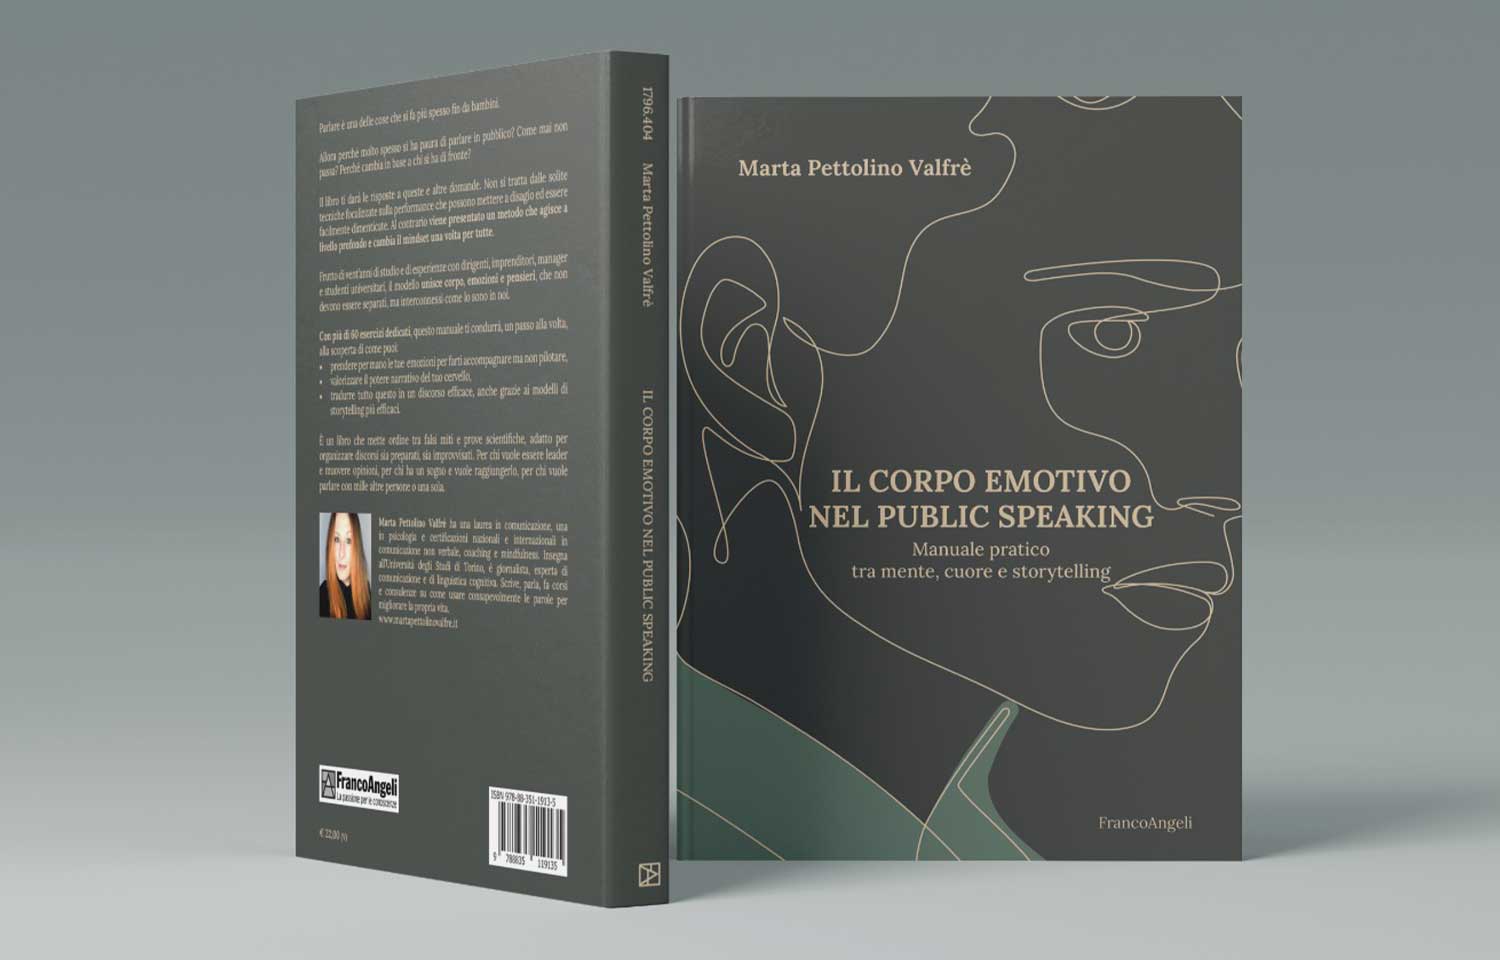 ANOVA-PROJECT-GRAFICA-EDITORIALE-cover-book-marta-pettolino-valfre